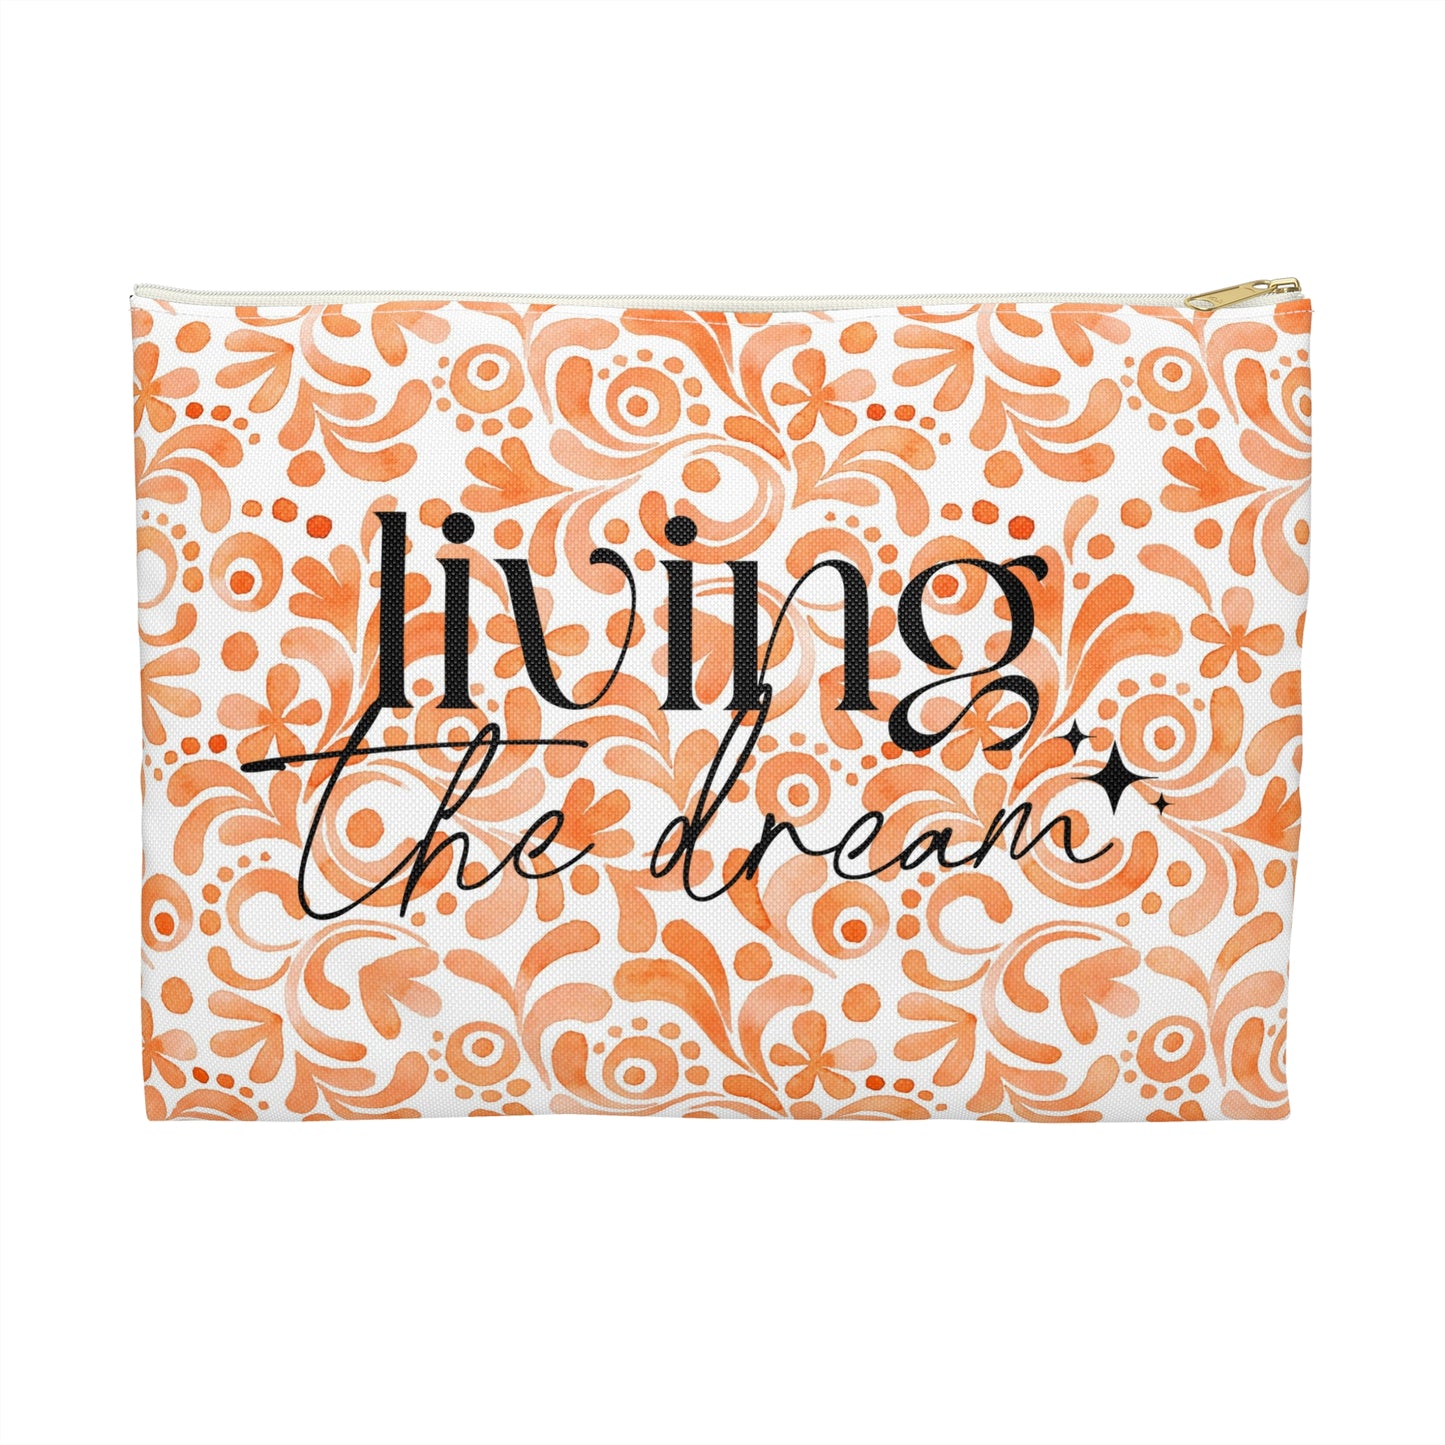 Orange Doodles Swirls - Living the Dream - Inspirational - Accessory Pouch / Makeup Case / Travel Pouch / Pencil case / Art Case